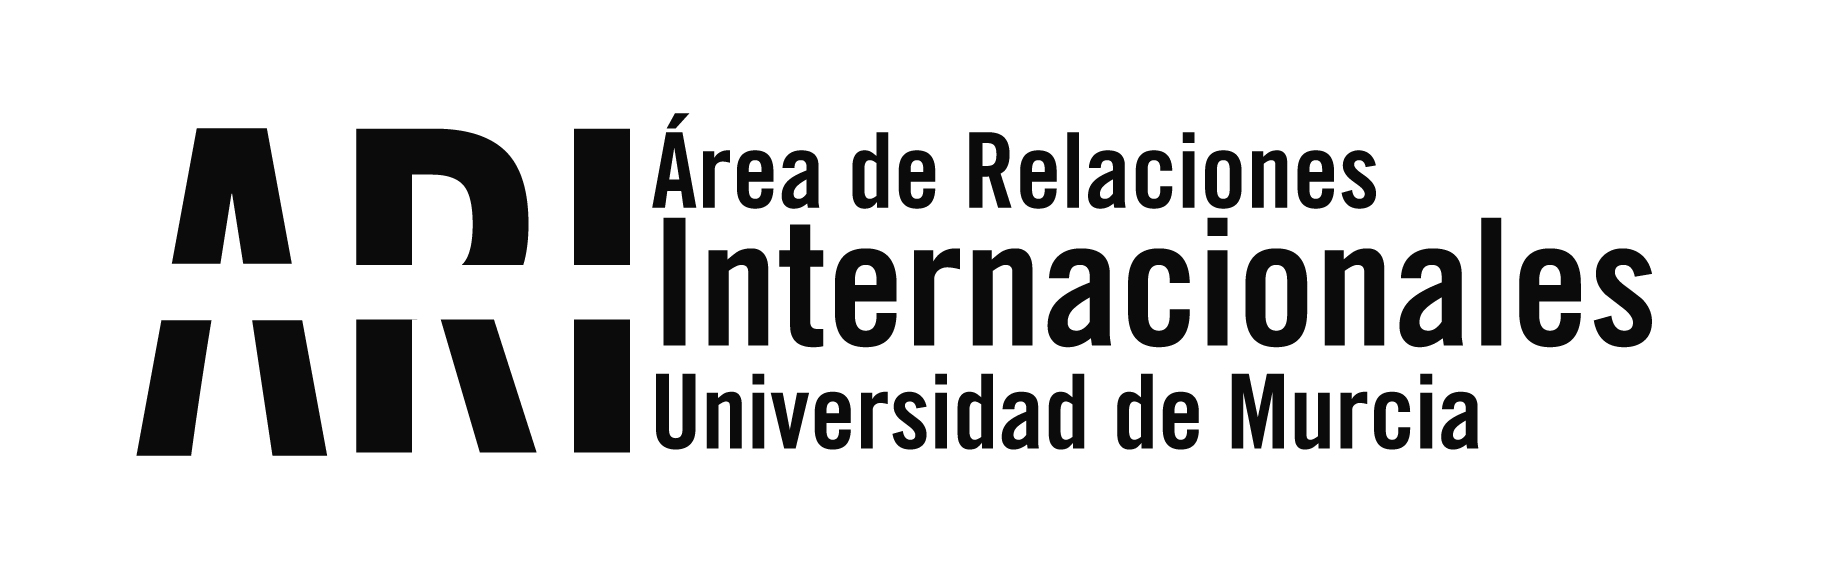 La UMU recibe a sus “Golondrinas” - Área de Relaciones Internacionales